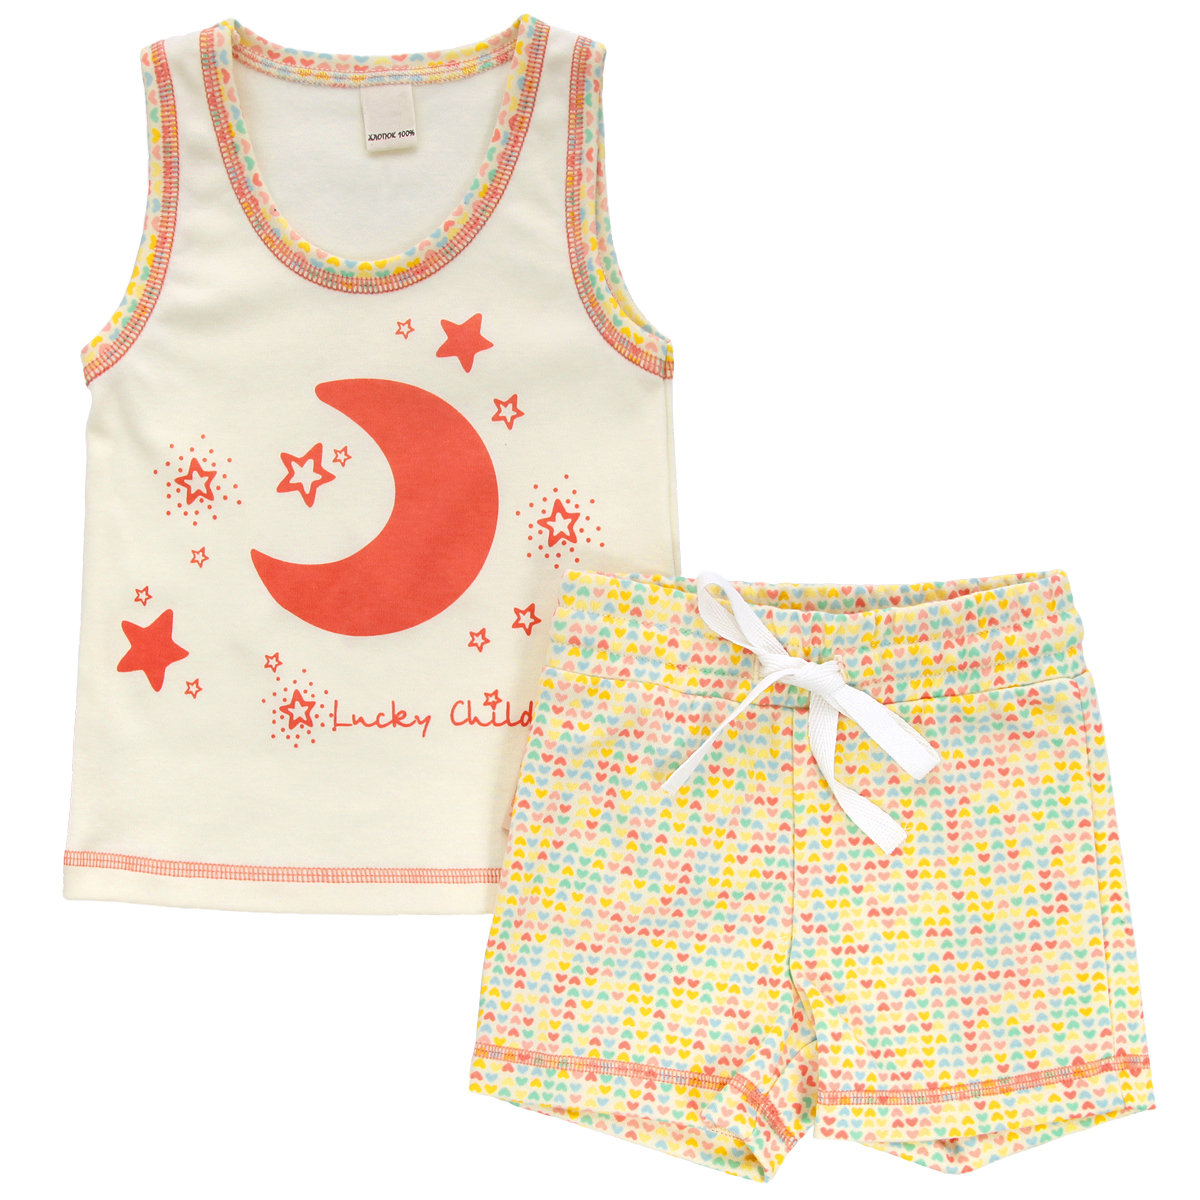 Комплект для девочки Lucky Child: майка, шорты, цвет: кремовый, желтый, оранжевый. 12-410. Размер 104/110